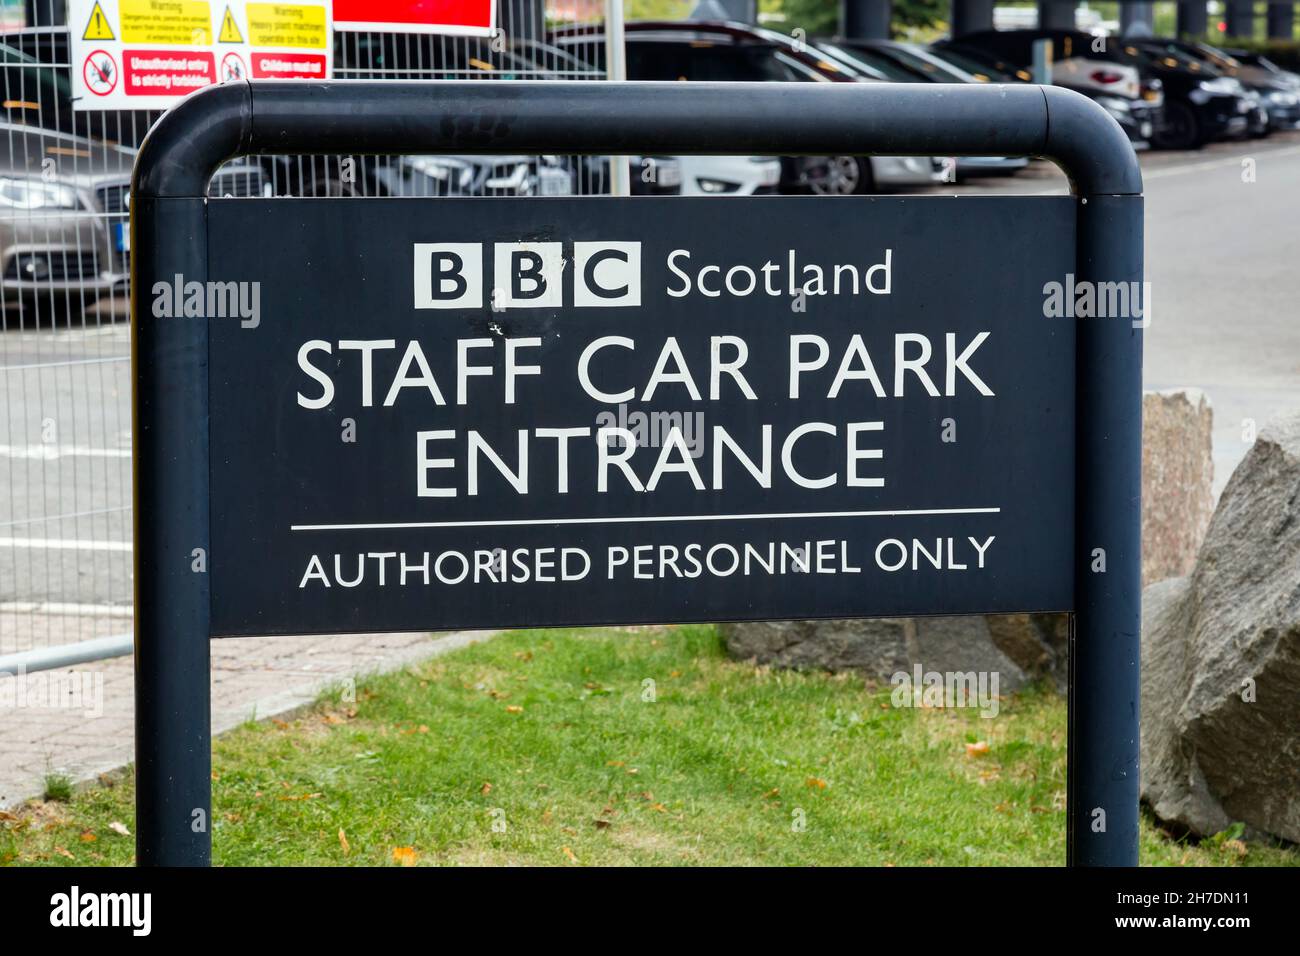 Panneau à l'entrée d'un parking BBC Scotland Staff, Pacific Quay, Glasgow, Écosse, Royaume-Uni Banque D'Images